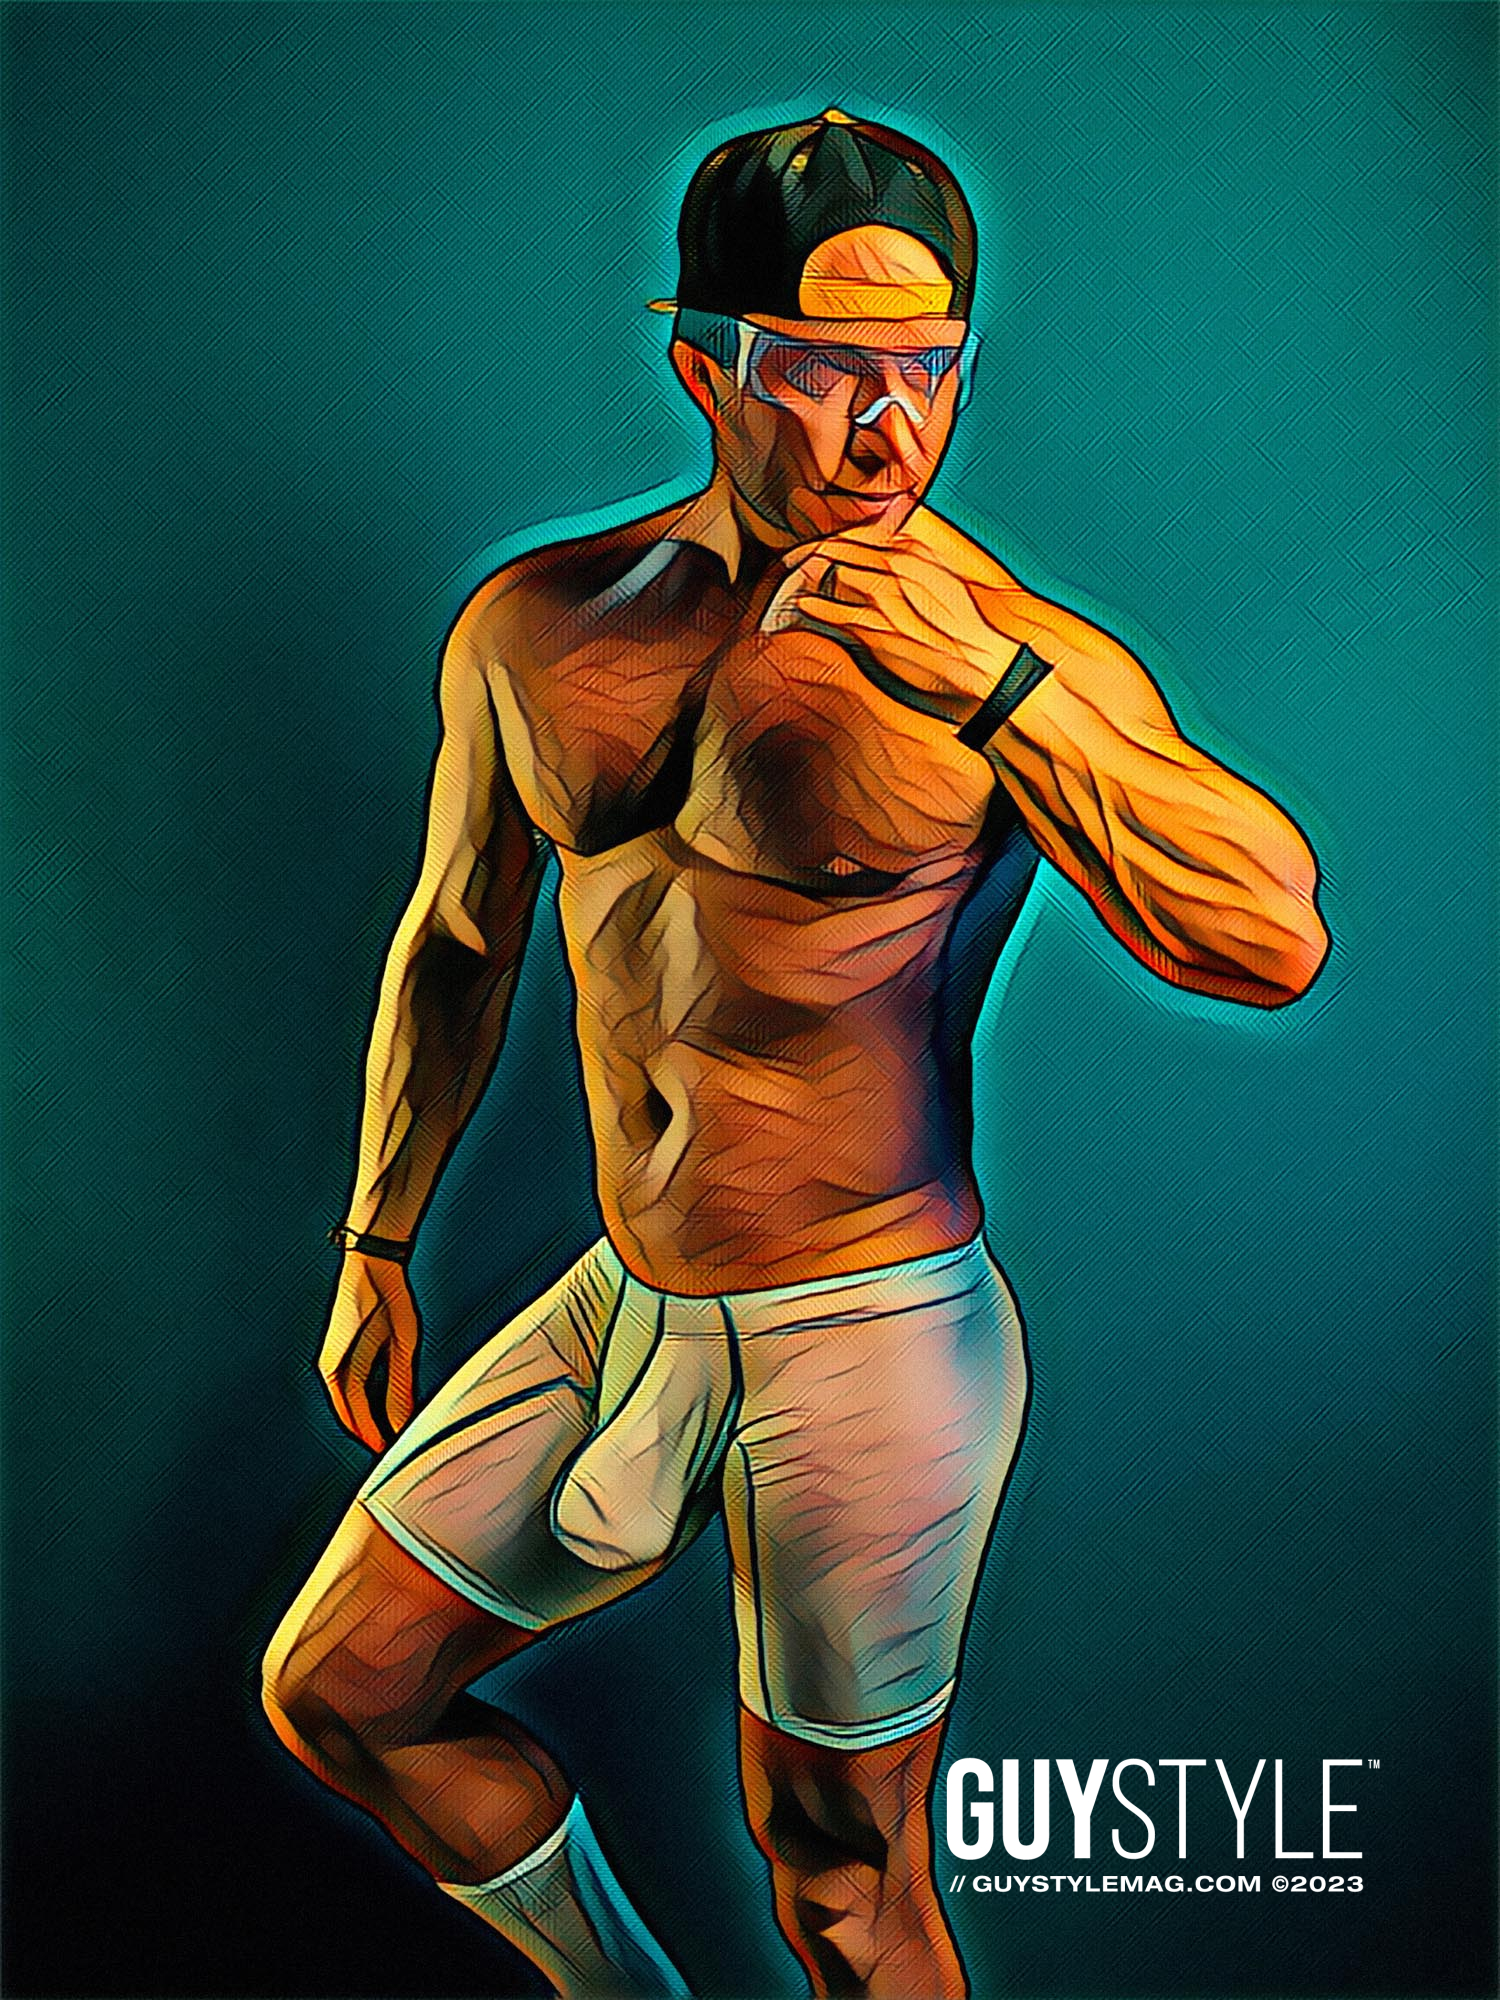 Homoerotic Queer Art by Maxwell Alexander – HARD NEW YORK Homoerotic Online Art Gallery – Best Gay Art Prints – Erotic Gay Art Prints – Queer Art Prints on Canvas